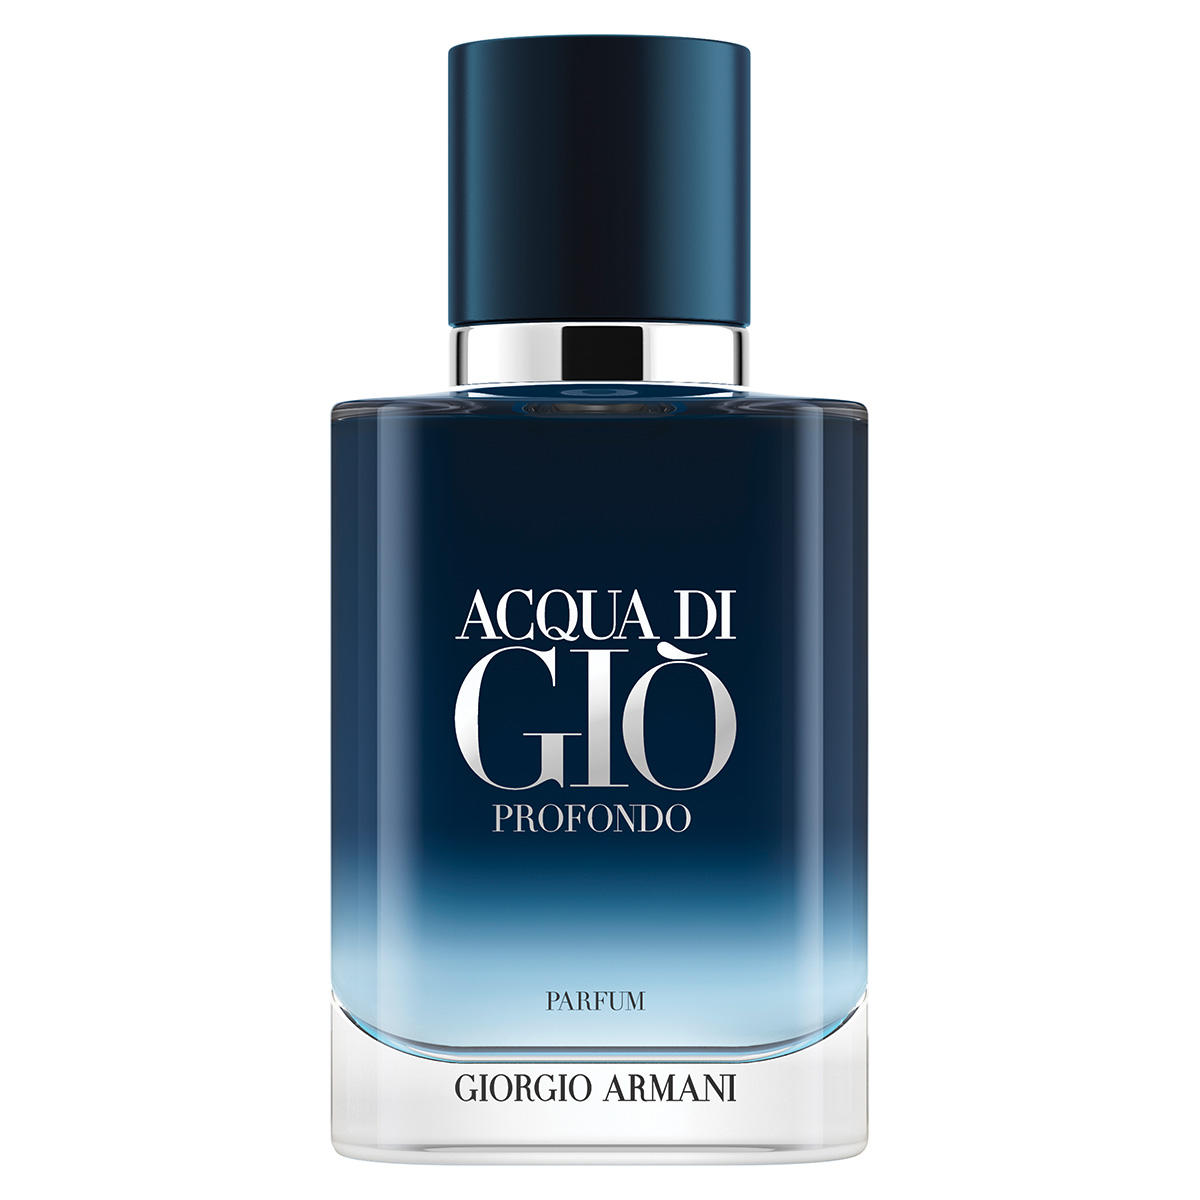 Giorgio Armani Acqua di Giò Profondo Parfum  - 1